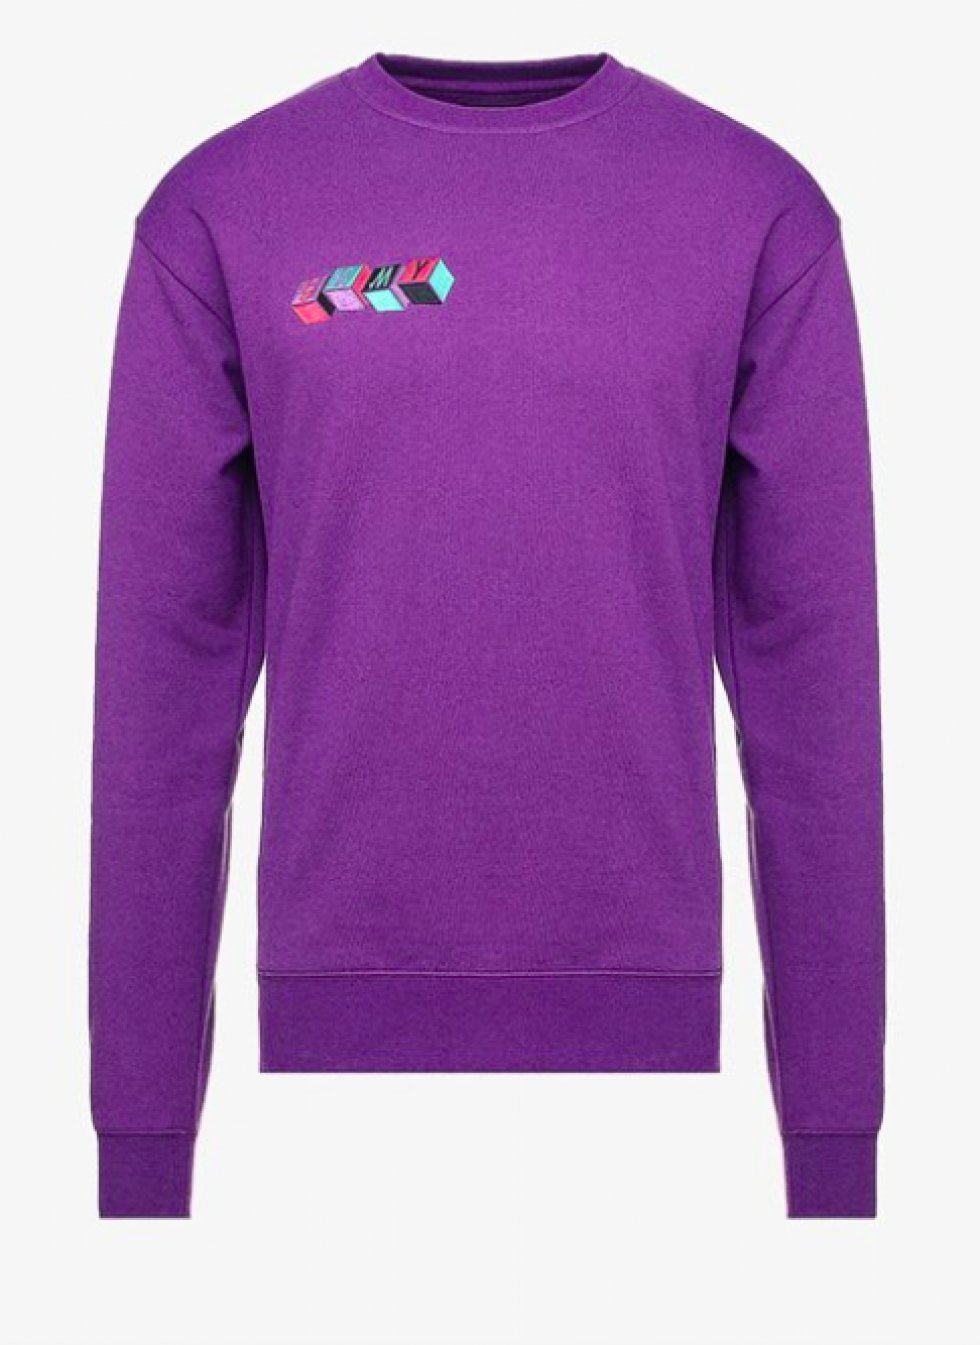 Grimey - 20 farverige trøjer, der gør dig klar til foråret 